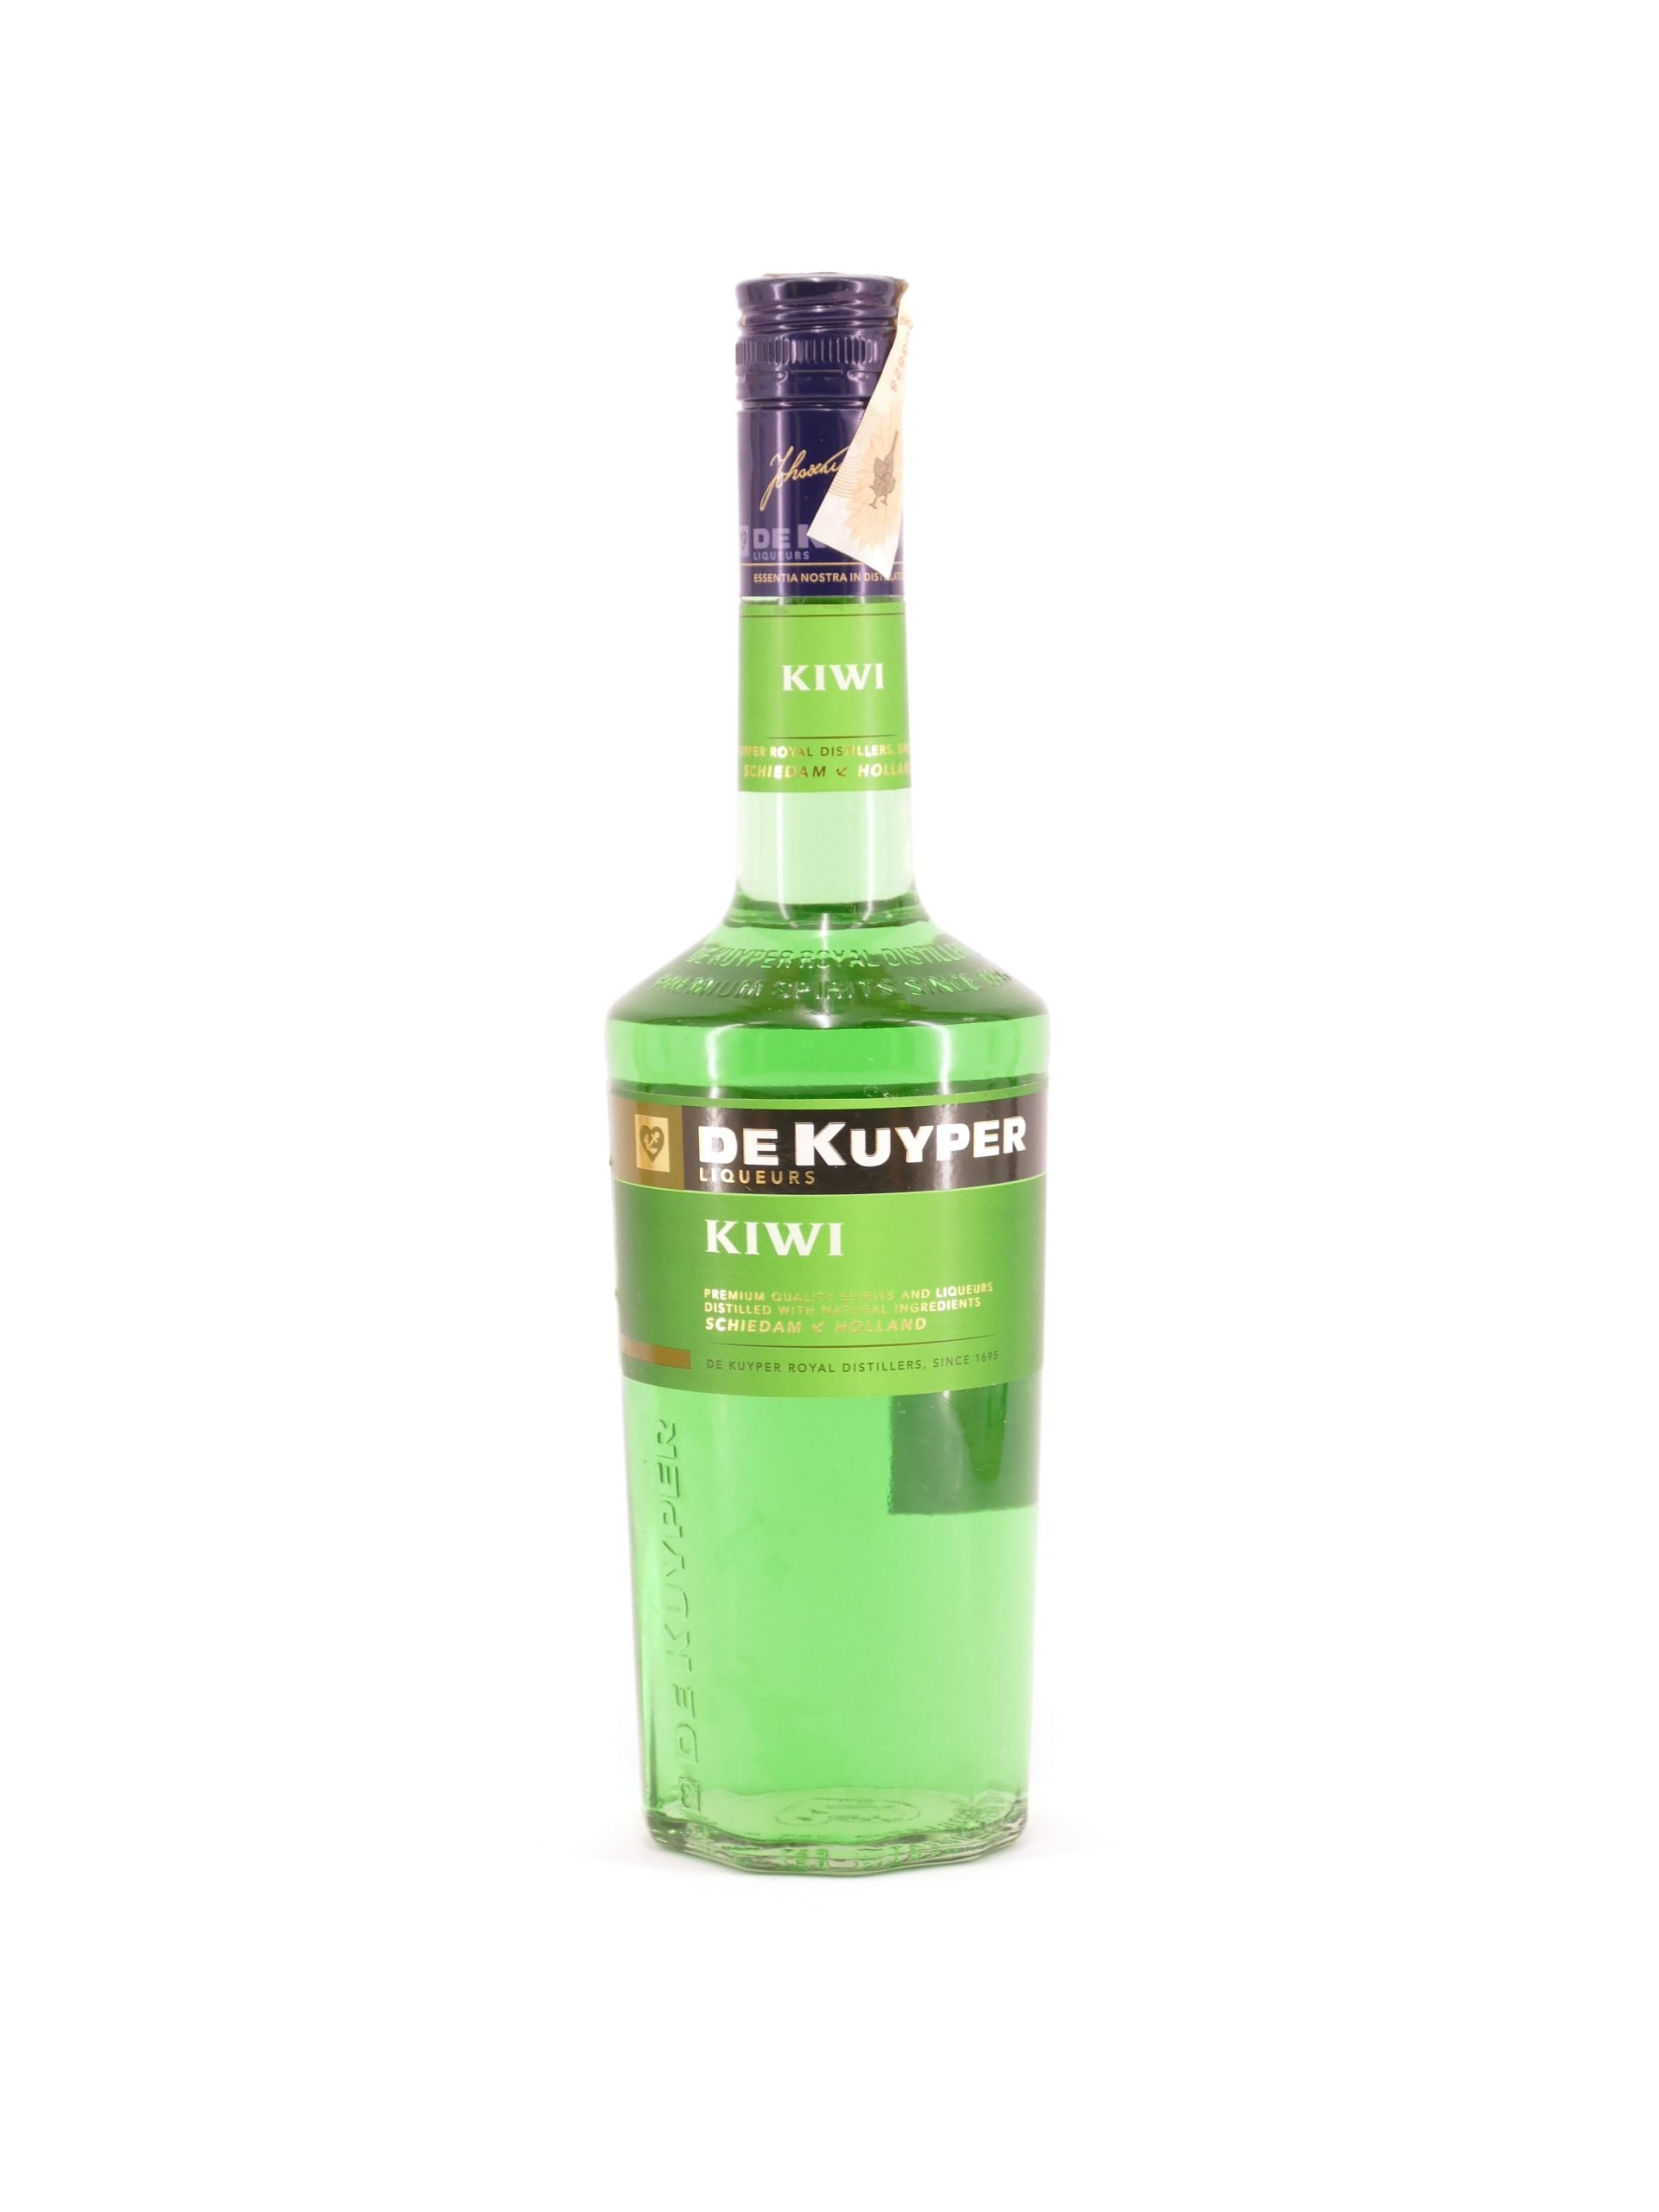 De Kuyper Kiwi – Probar